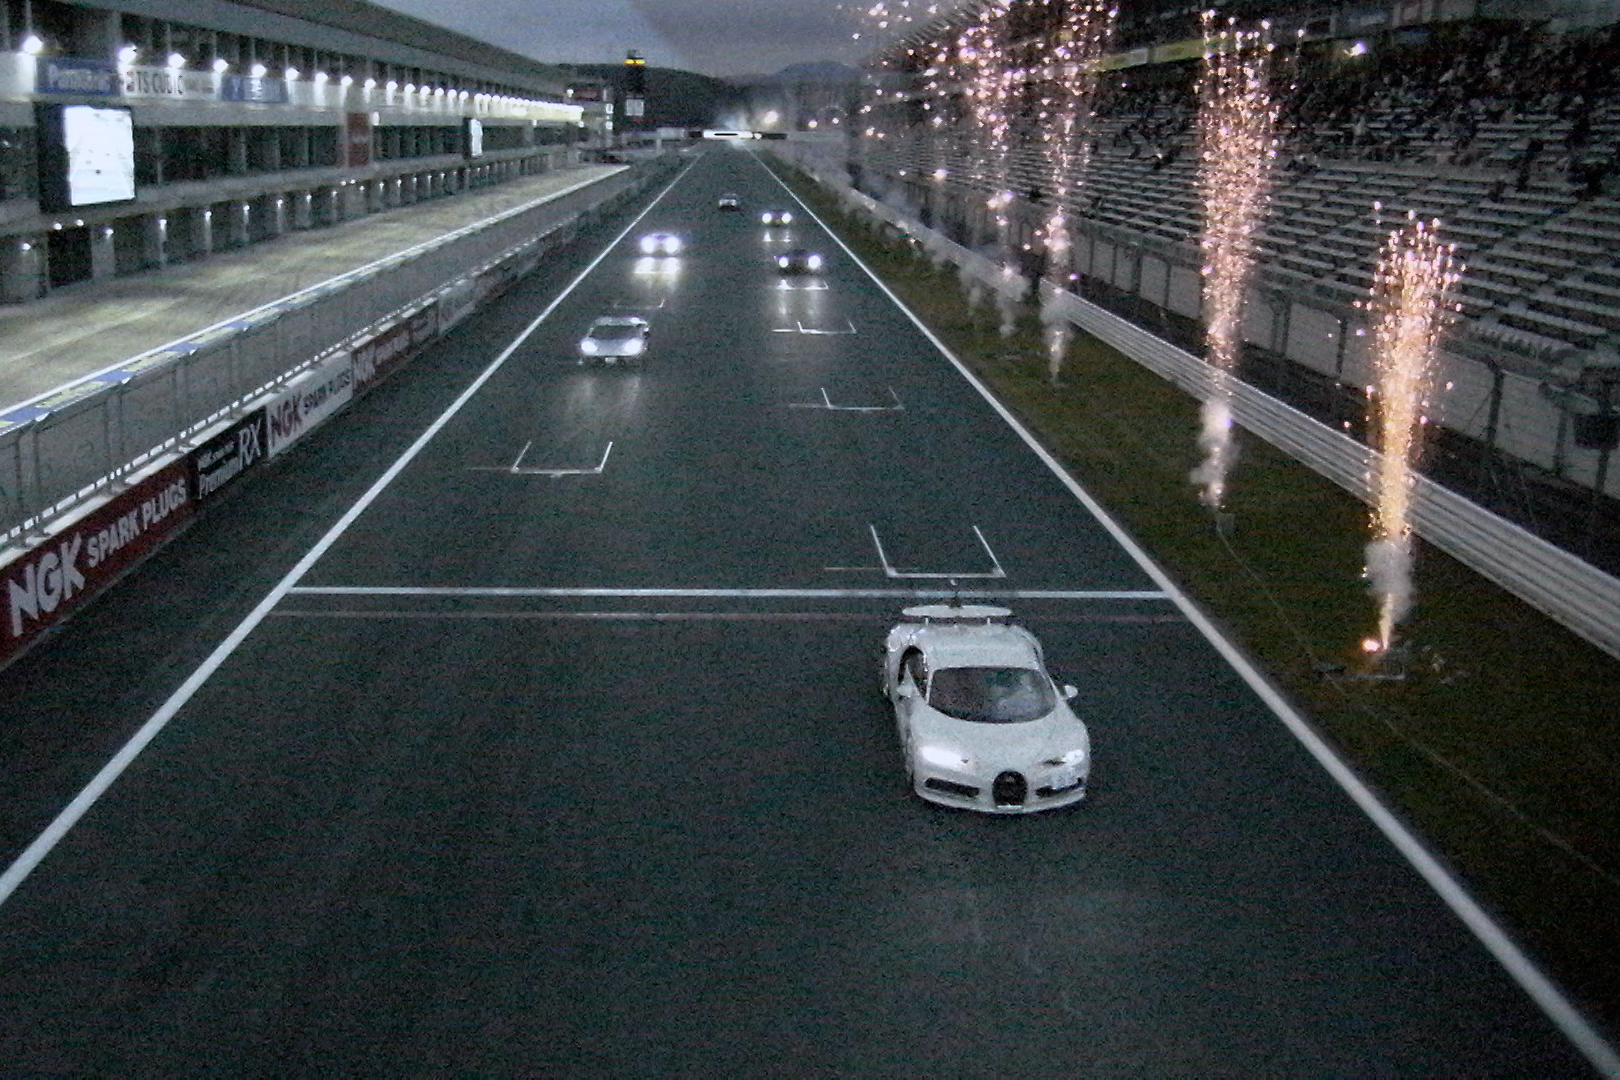 富士スピードウェイならではのスーパーカーと花火のコラボもイベントの見物のひとつ。